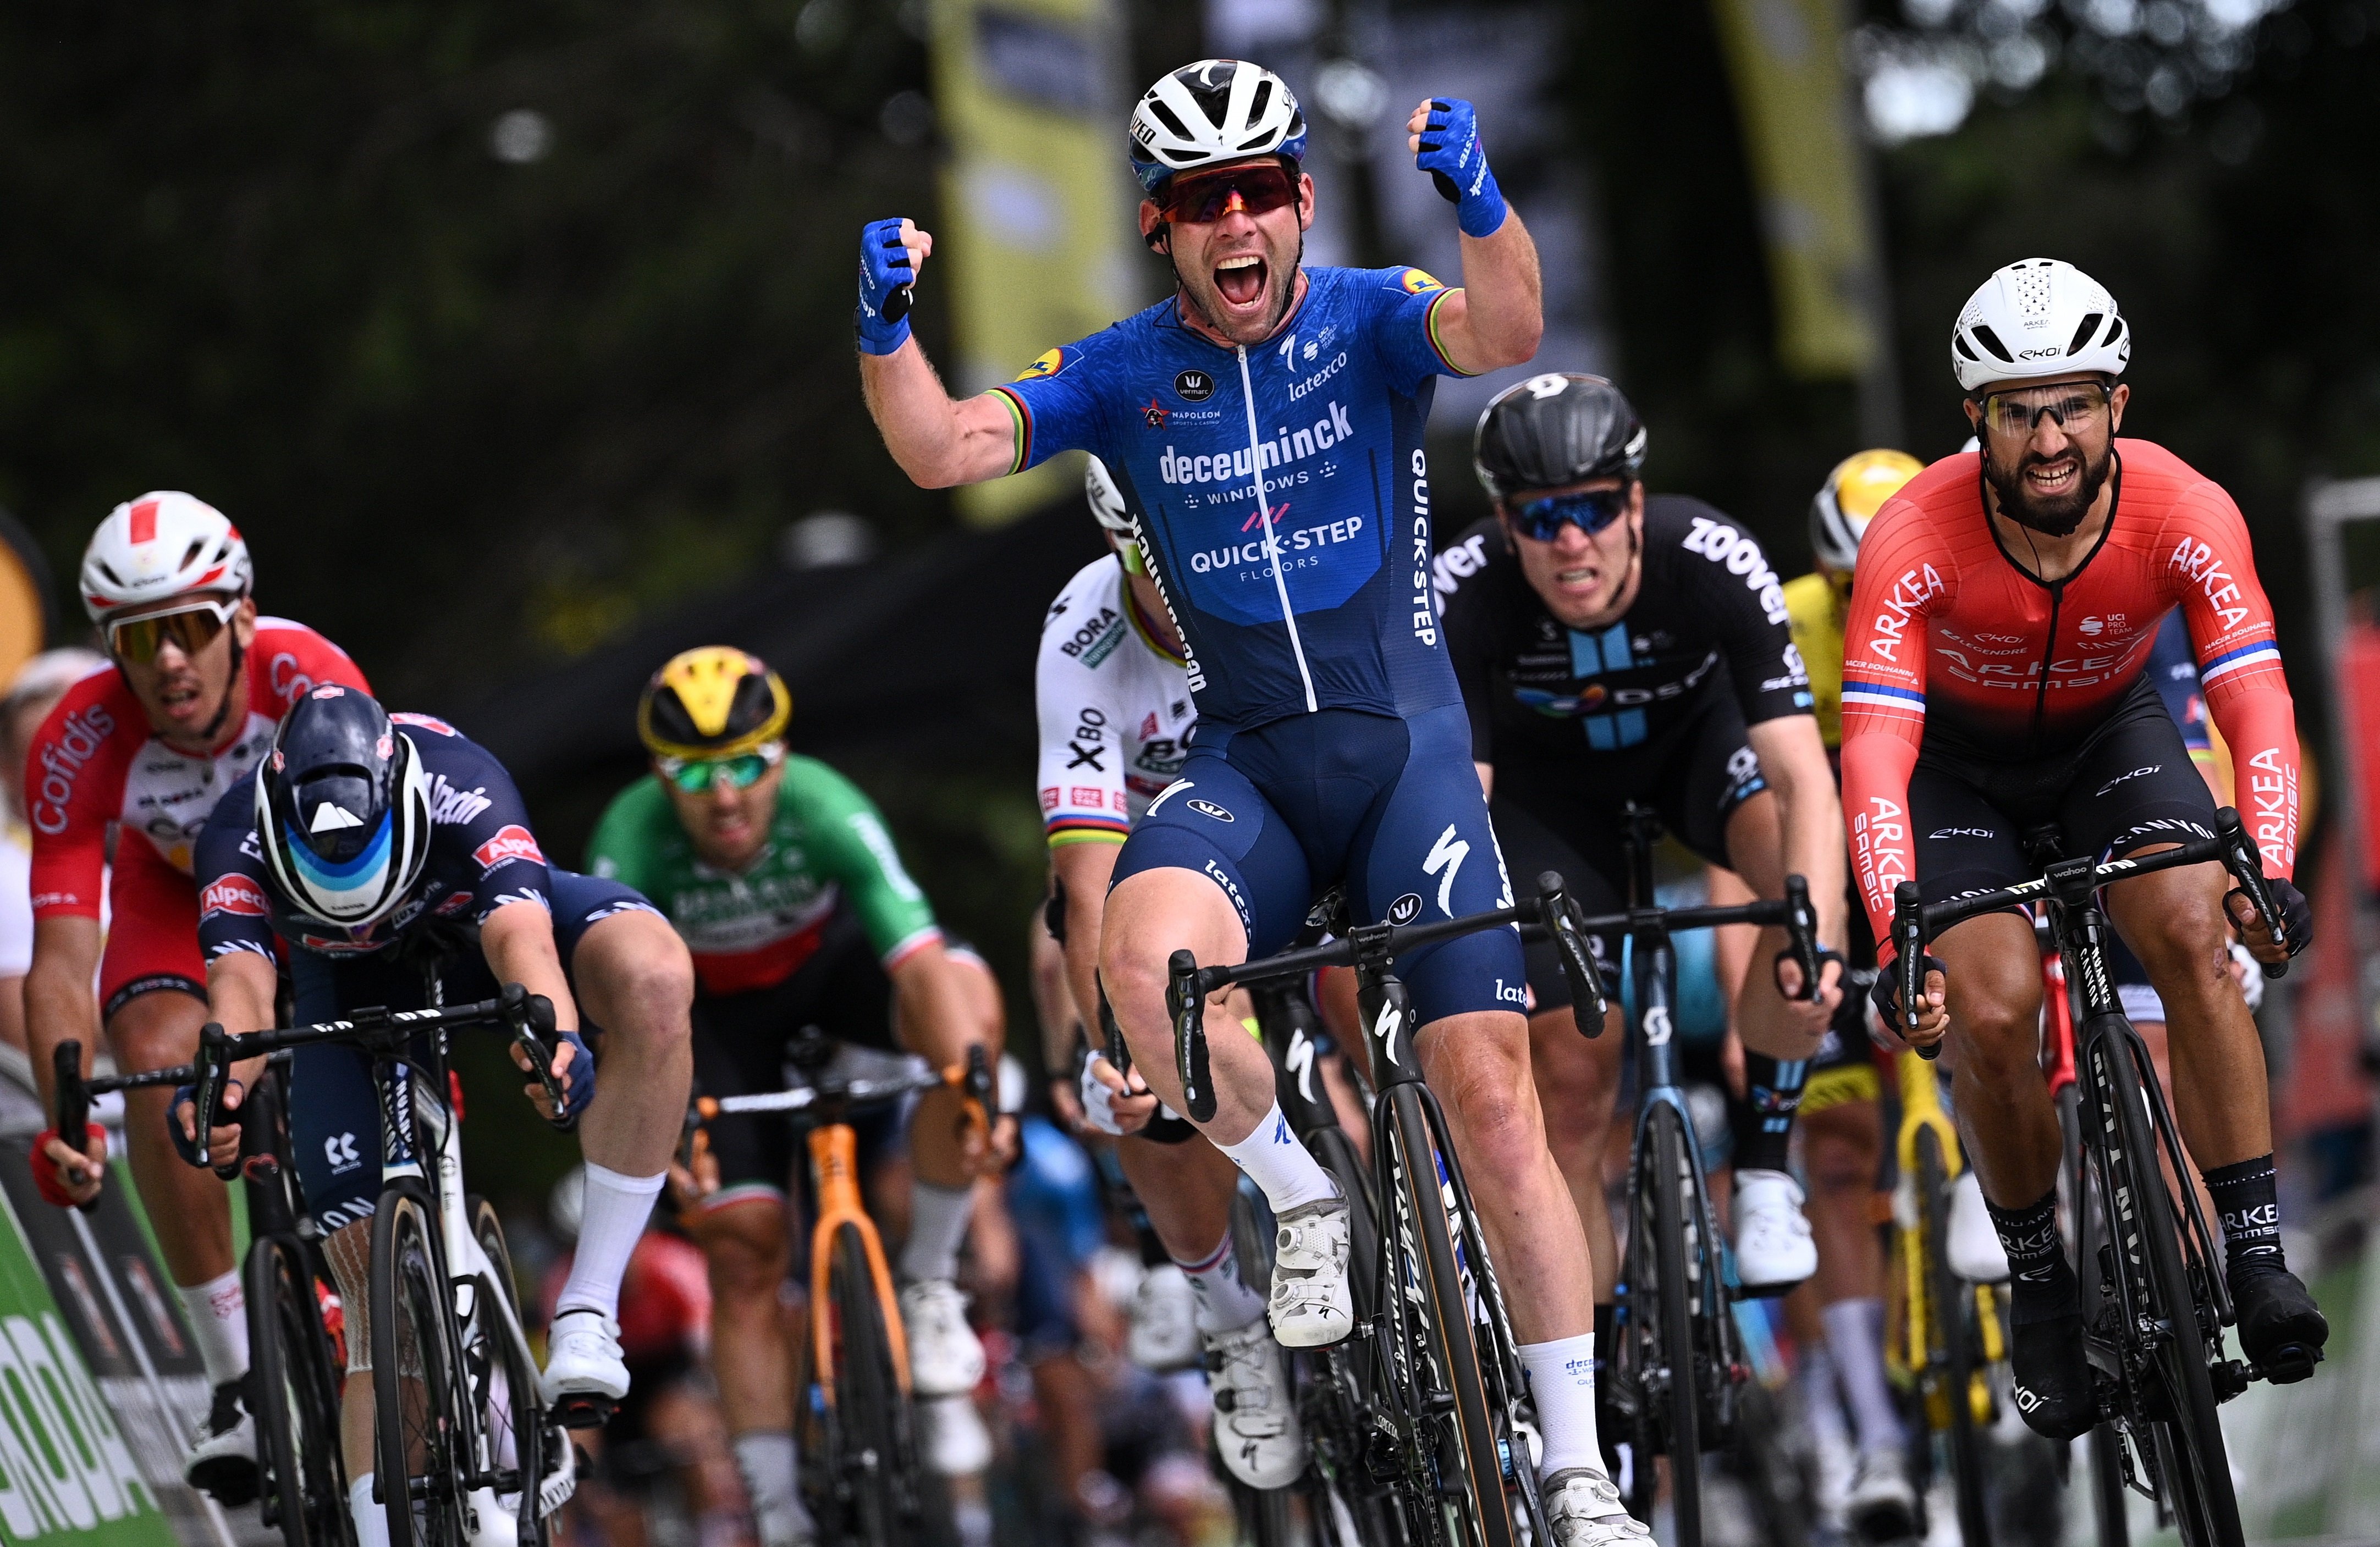 Victòria emotiva de Cavendish en l'etapa més reivindicativa del Tour